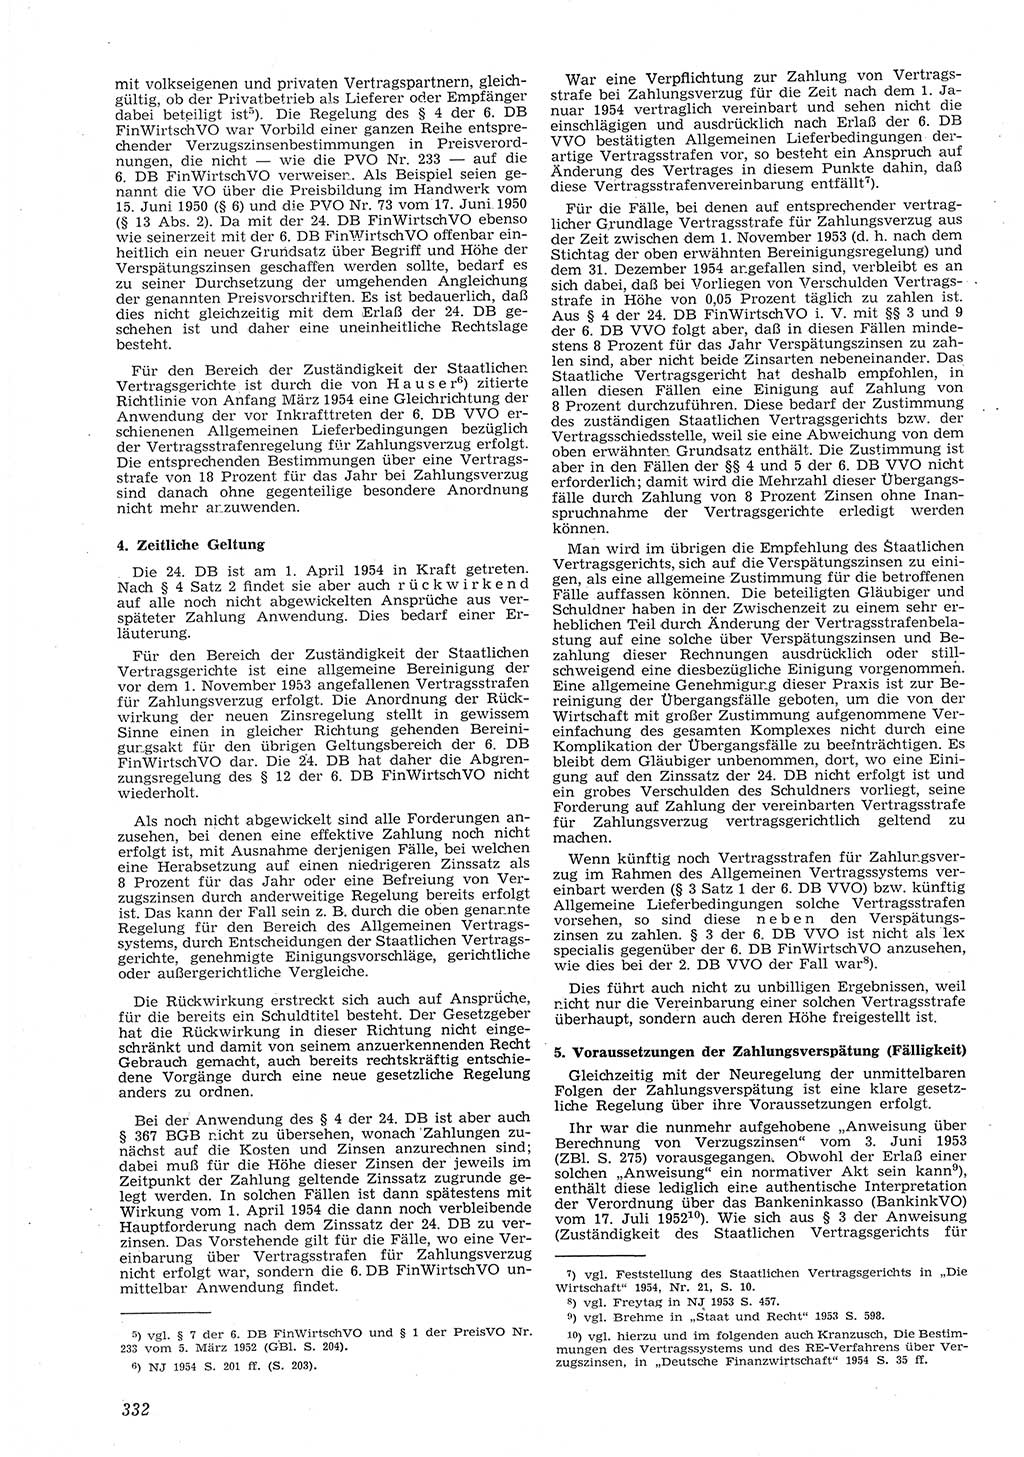 Neue Justiz (NJ), Zeitschrift für Recht und Rechtswissenschaft [Deutsche Demokratische Republik (DDR)], 8. Jahrgang 1954, Seite 332 (NJ DDR 1954, S. 332)